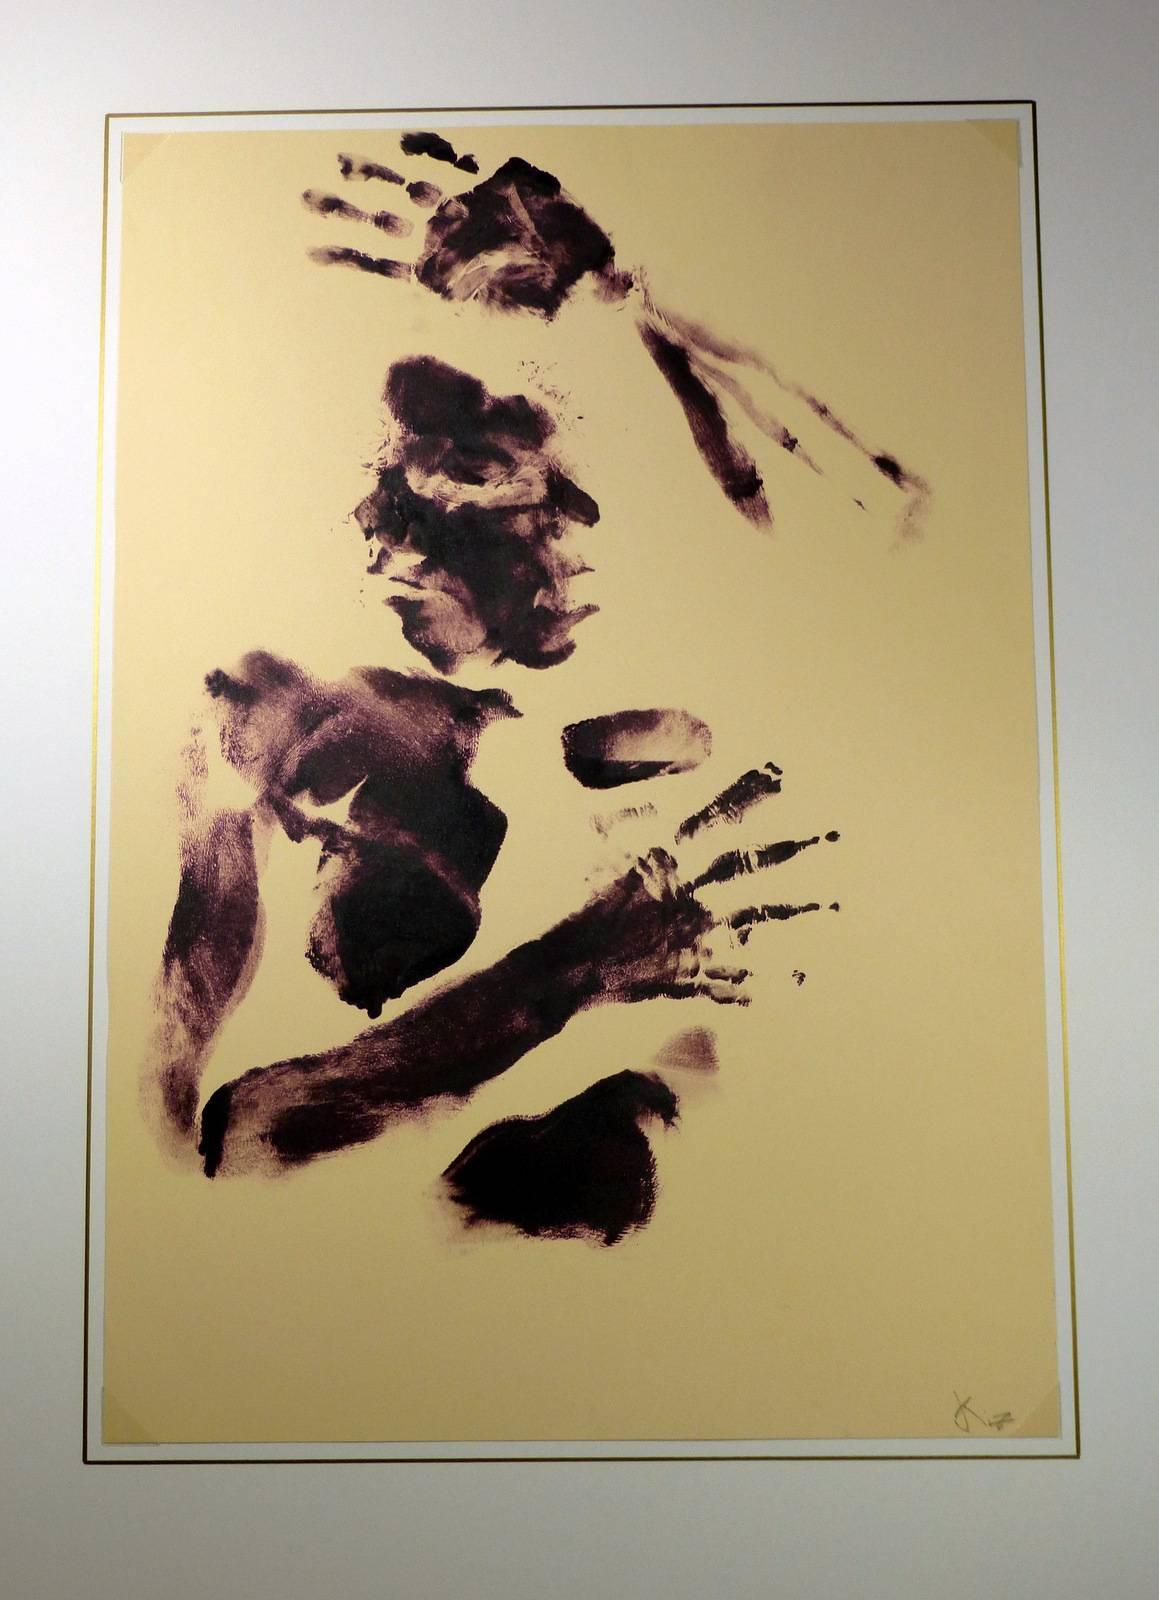 Körperkunst aus Acryl mit Oberkörper, Armen und Gesicht von der amerikanischen Künstlerin Kismine Varner, um 1990. Signiert unten rechts.  

Originalkunstwerk auf Papier auf einem weißen Passepartout mit Goldrand. Die Matte passt in einen Rahmen in